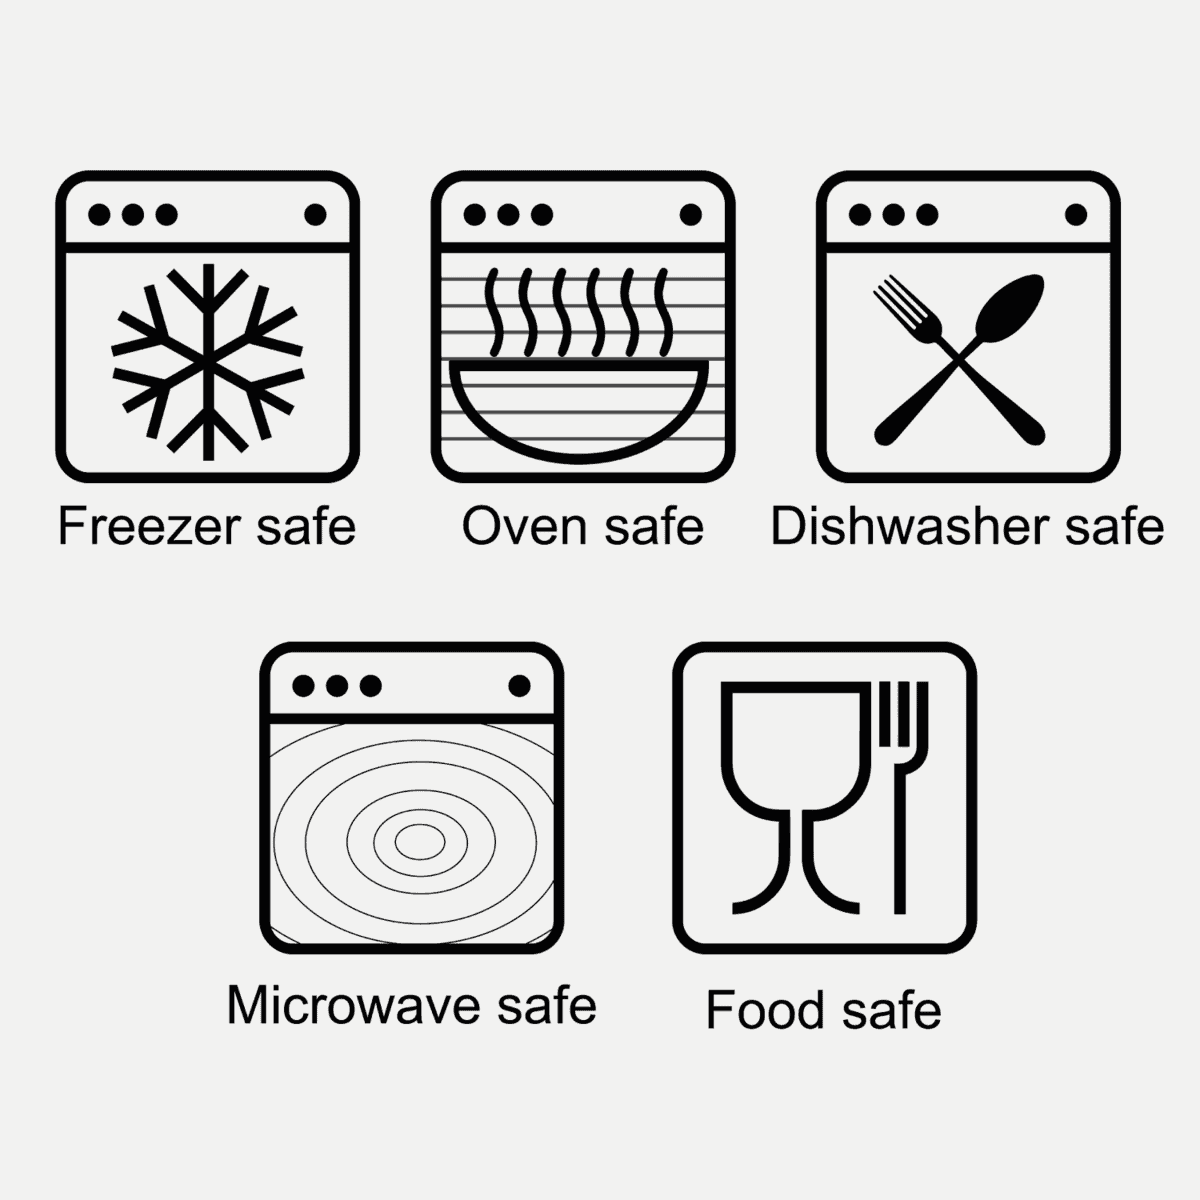 食品接触材料的性能，以保证食品安全。什么样的盘子是烤箱安全的